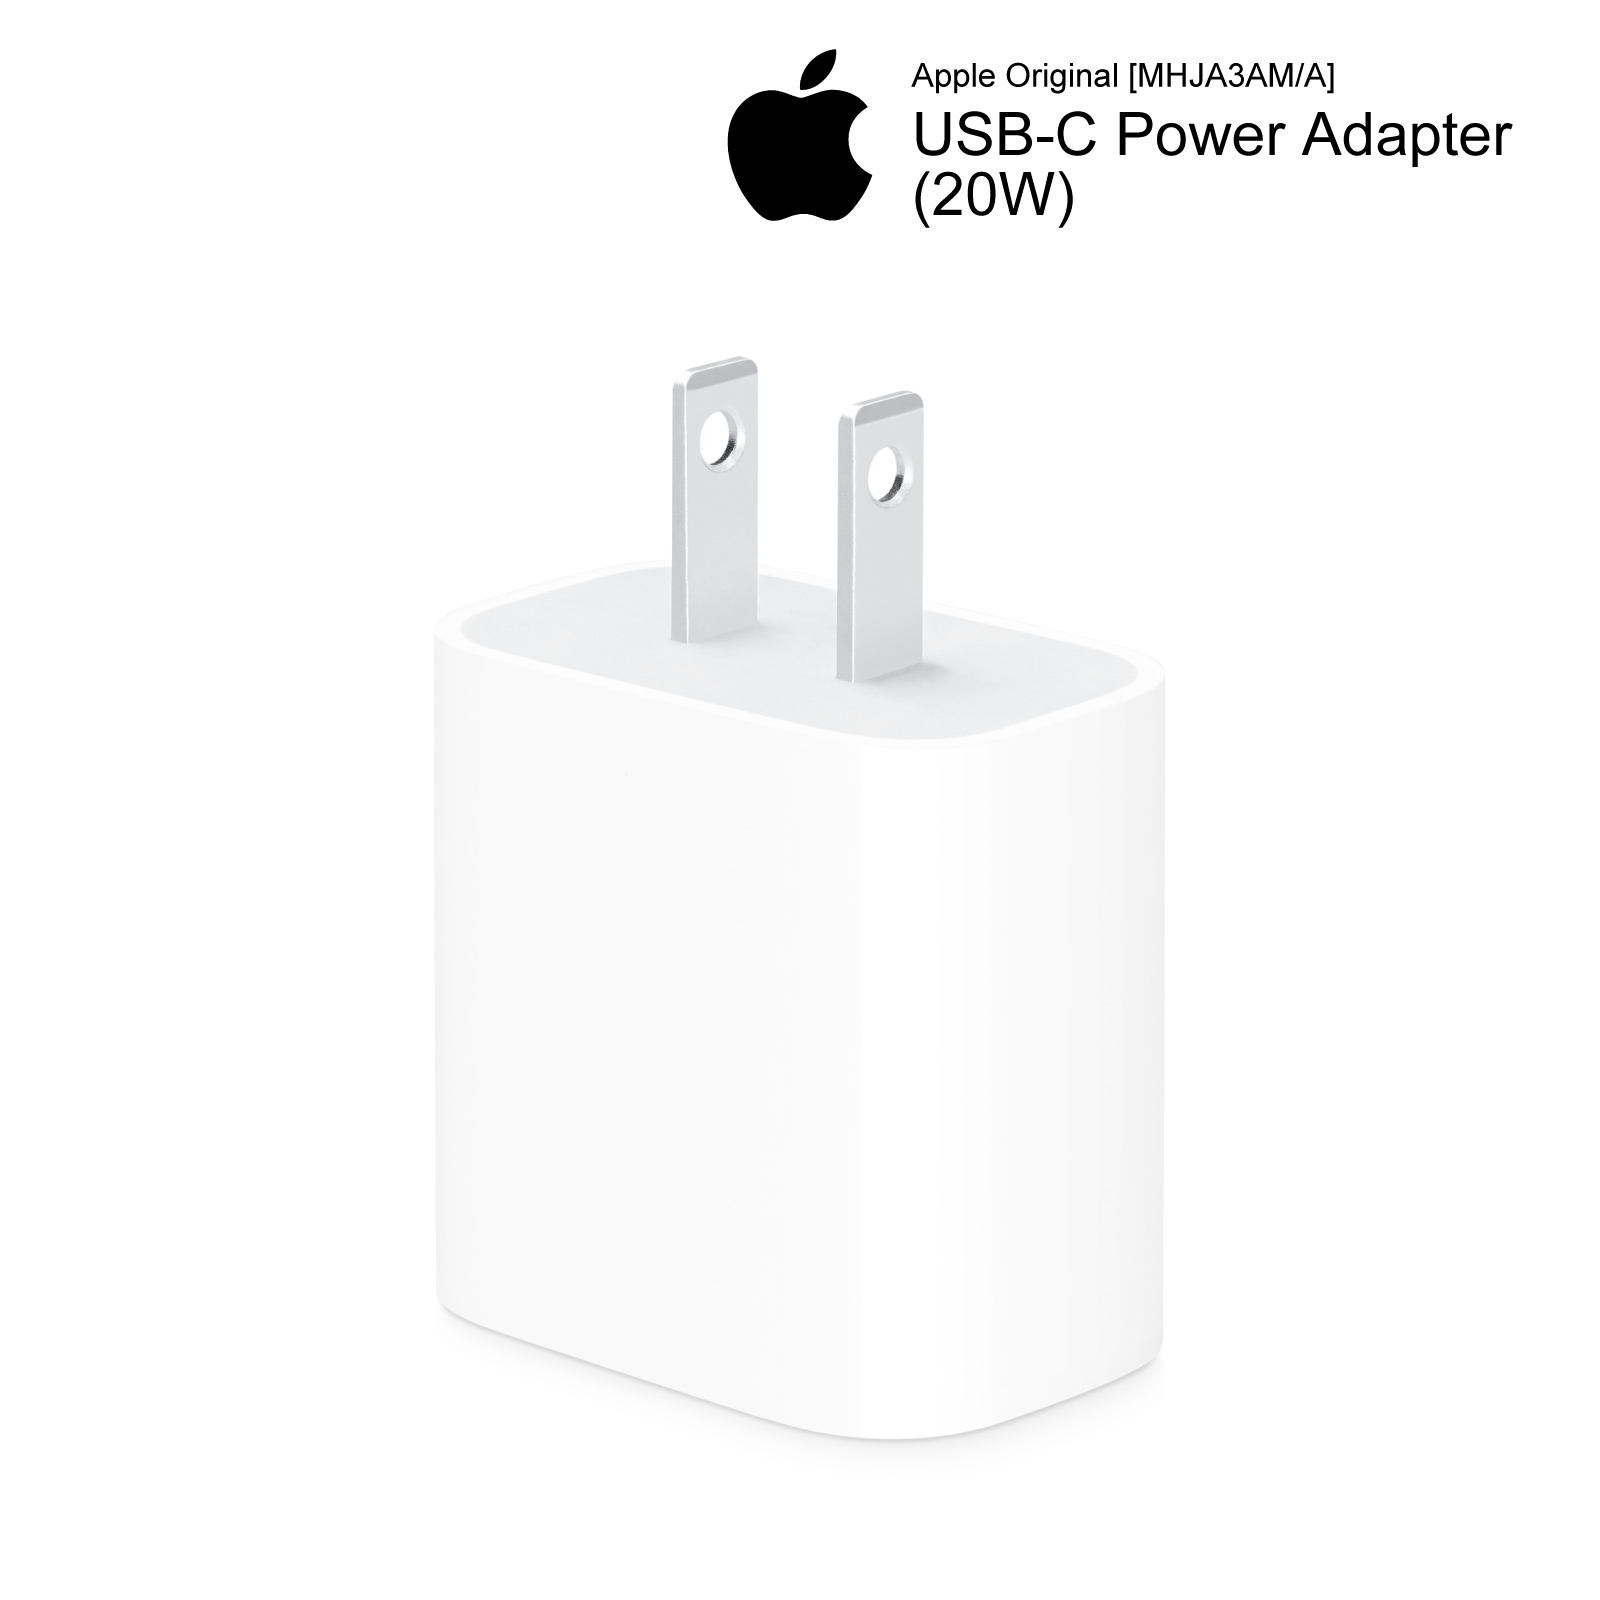 Apple 純正 20W USB-C 電源アダプタ PD 急速充電 iPhone iPod 充電器 コンセント アップル アイフォン MHJA3AM/A